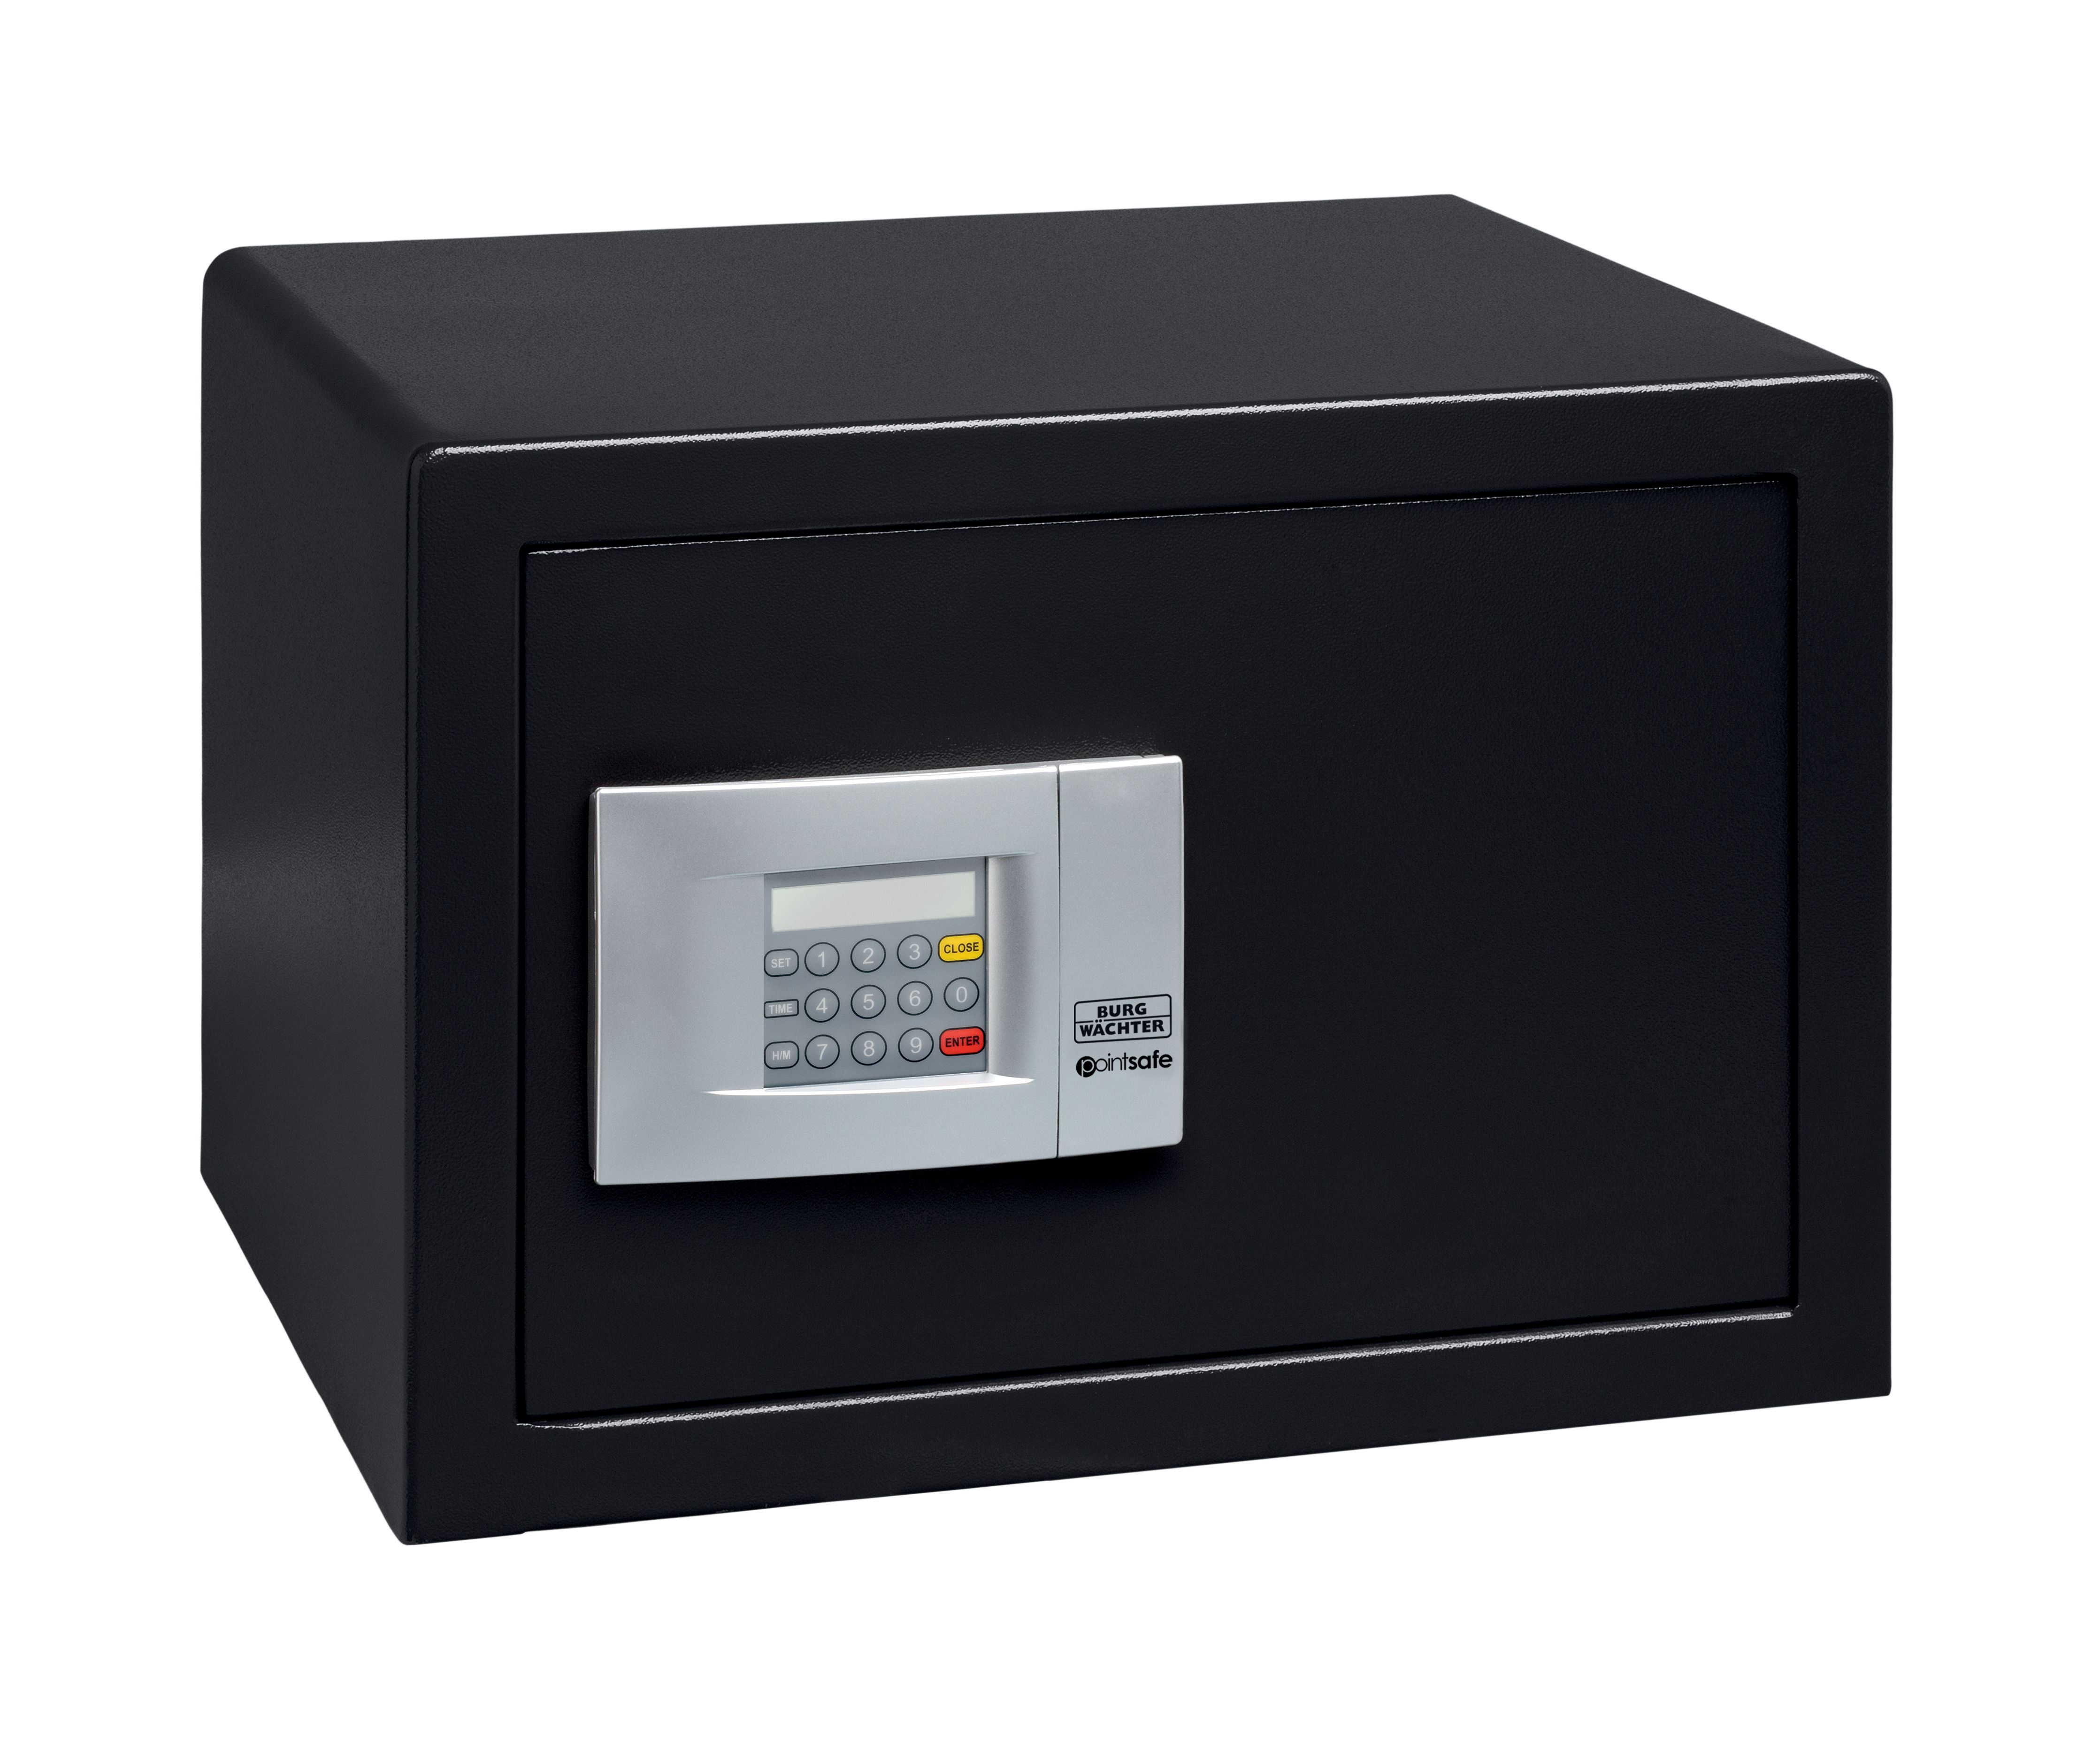 Image of Burg-Wachter Black Pointsafe Electronic Home Safe - 38.8L